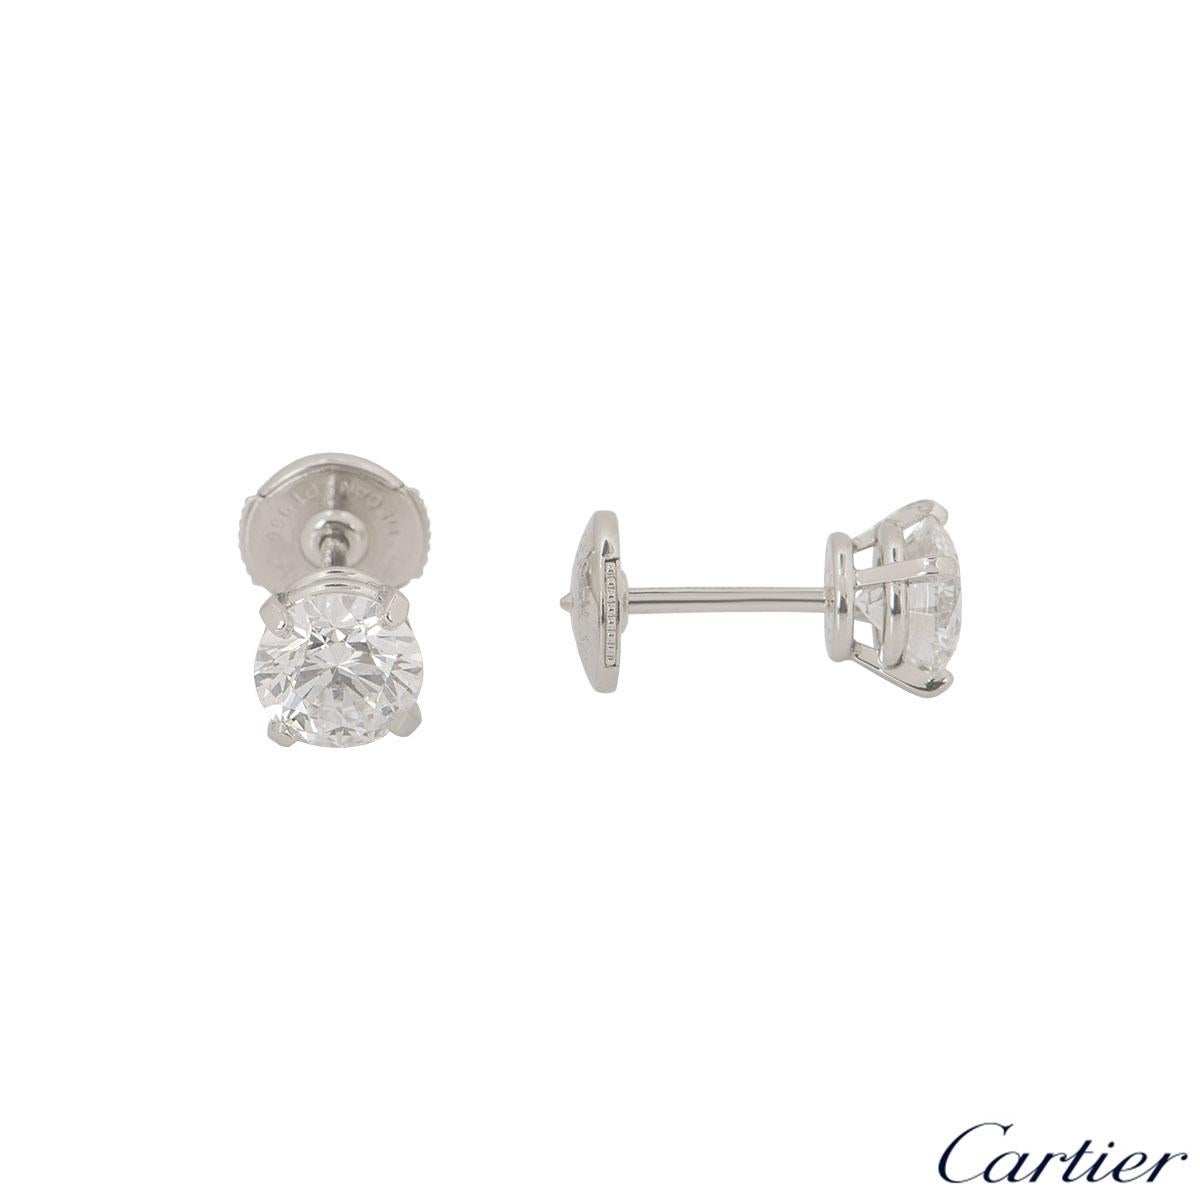 cartier 1895 earrings price